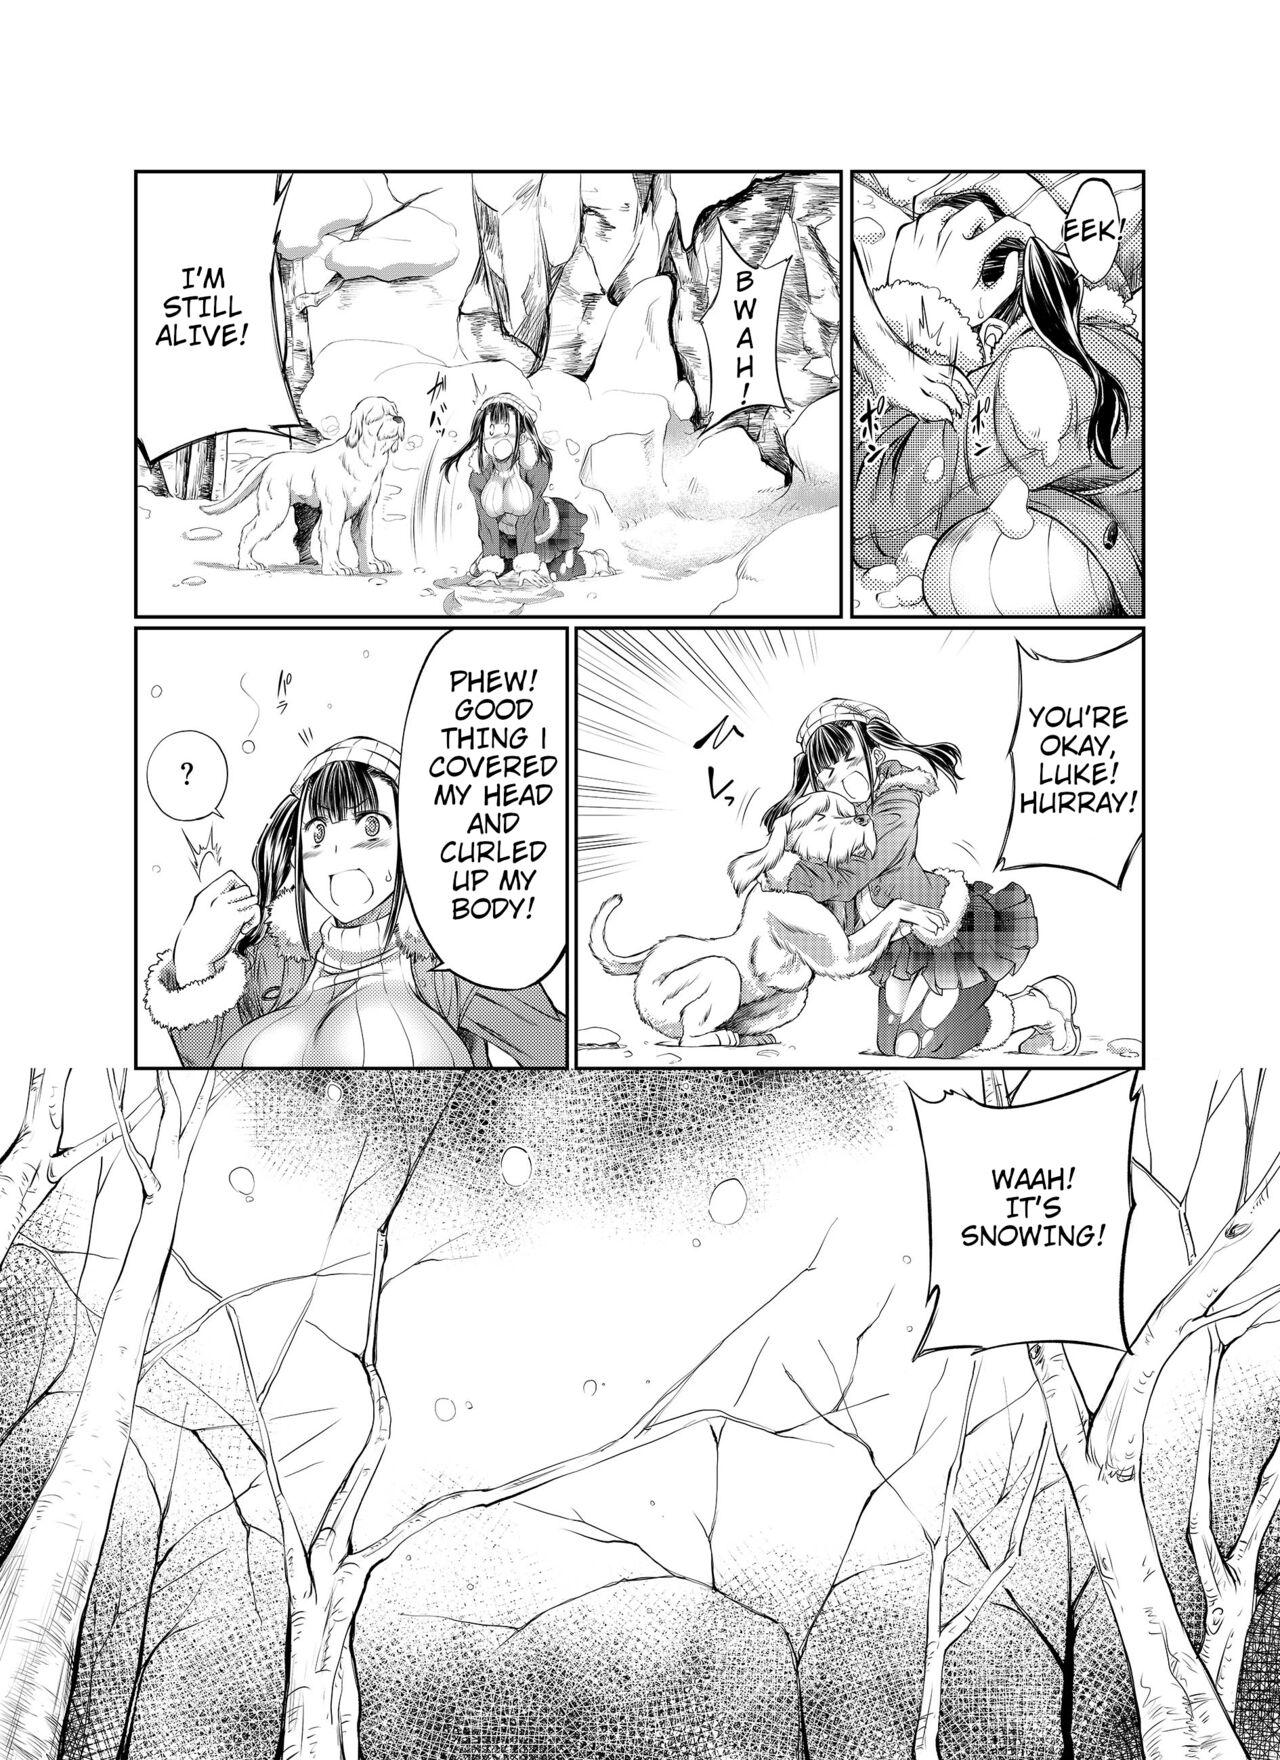 Little Kanbotsuyama Biwak Bisex - Page 5